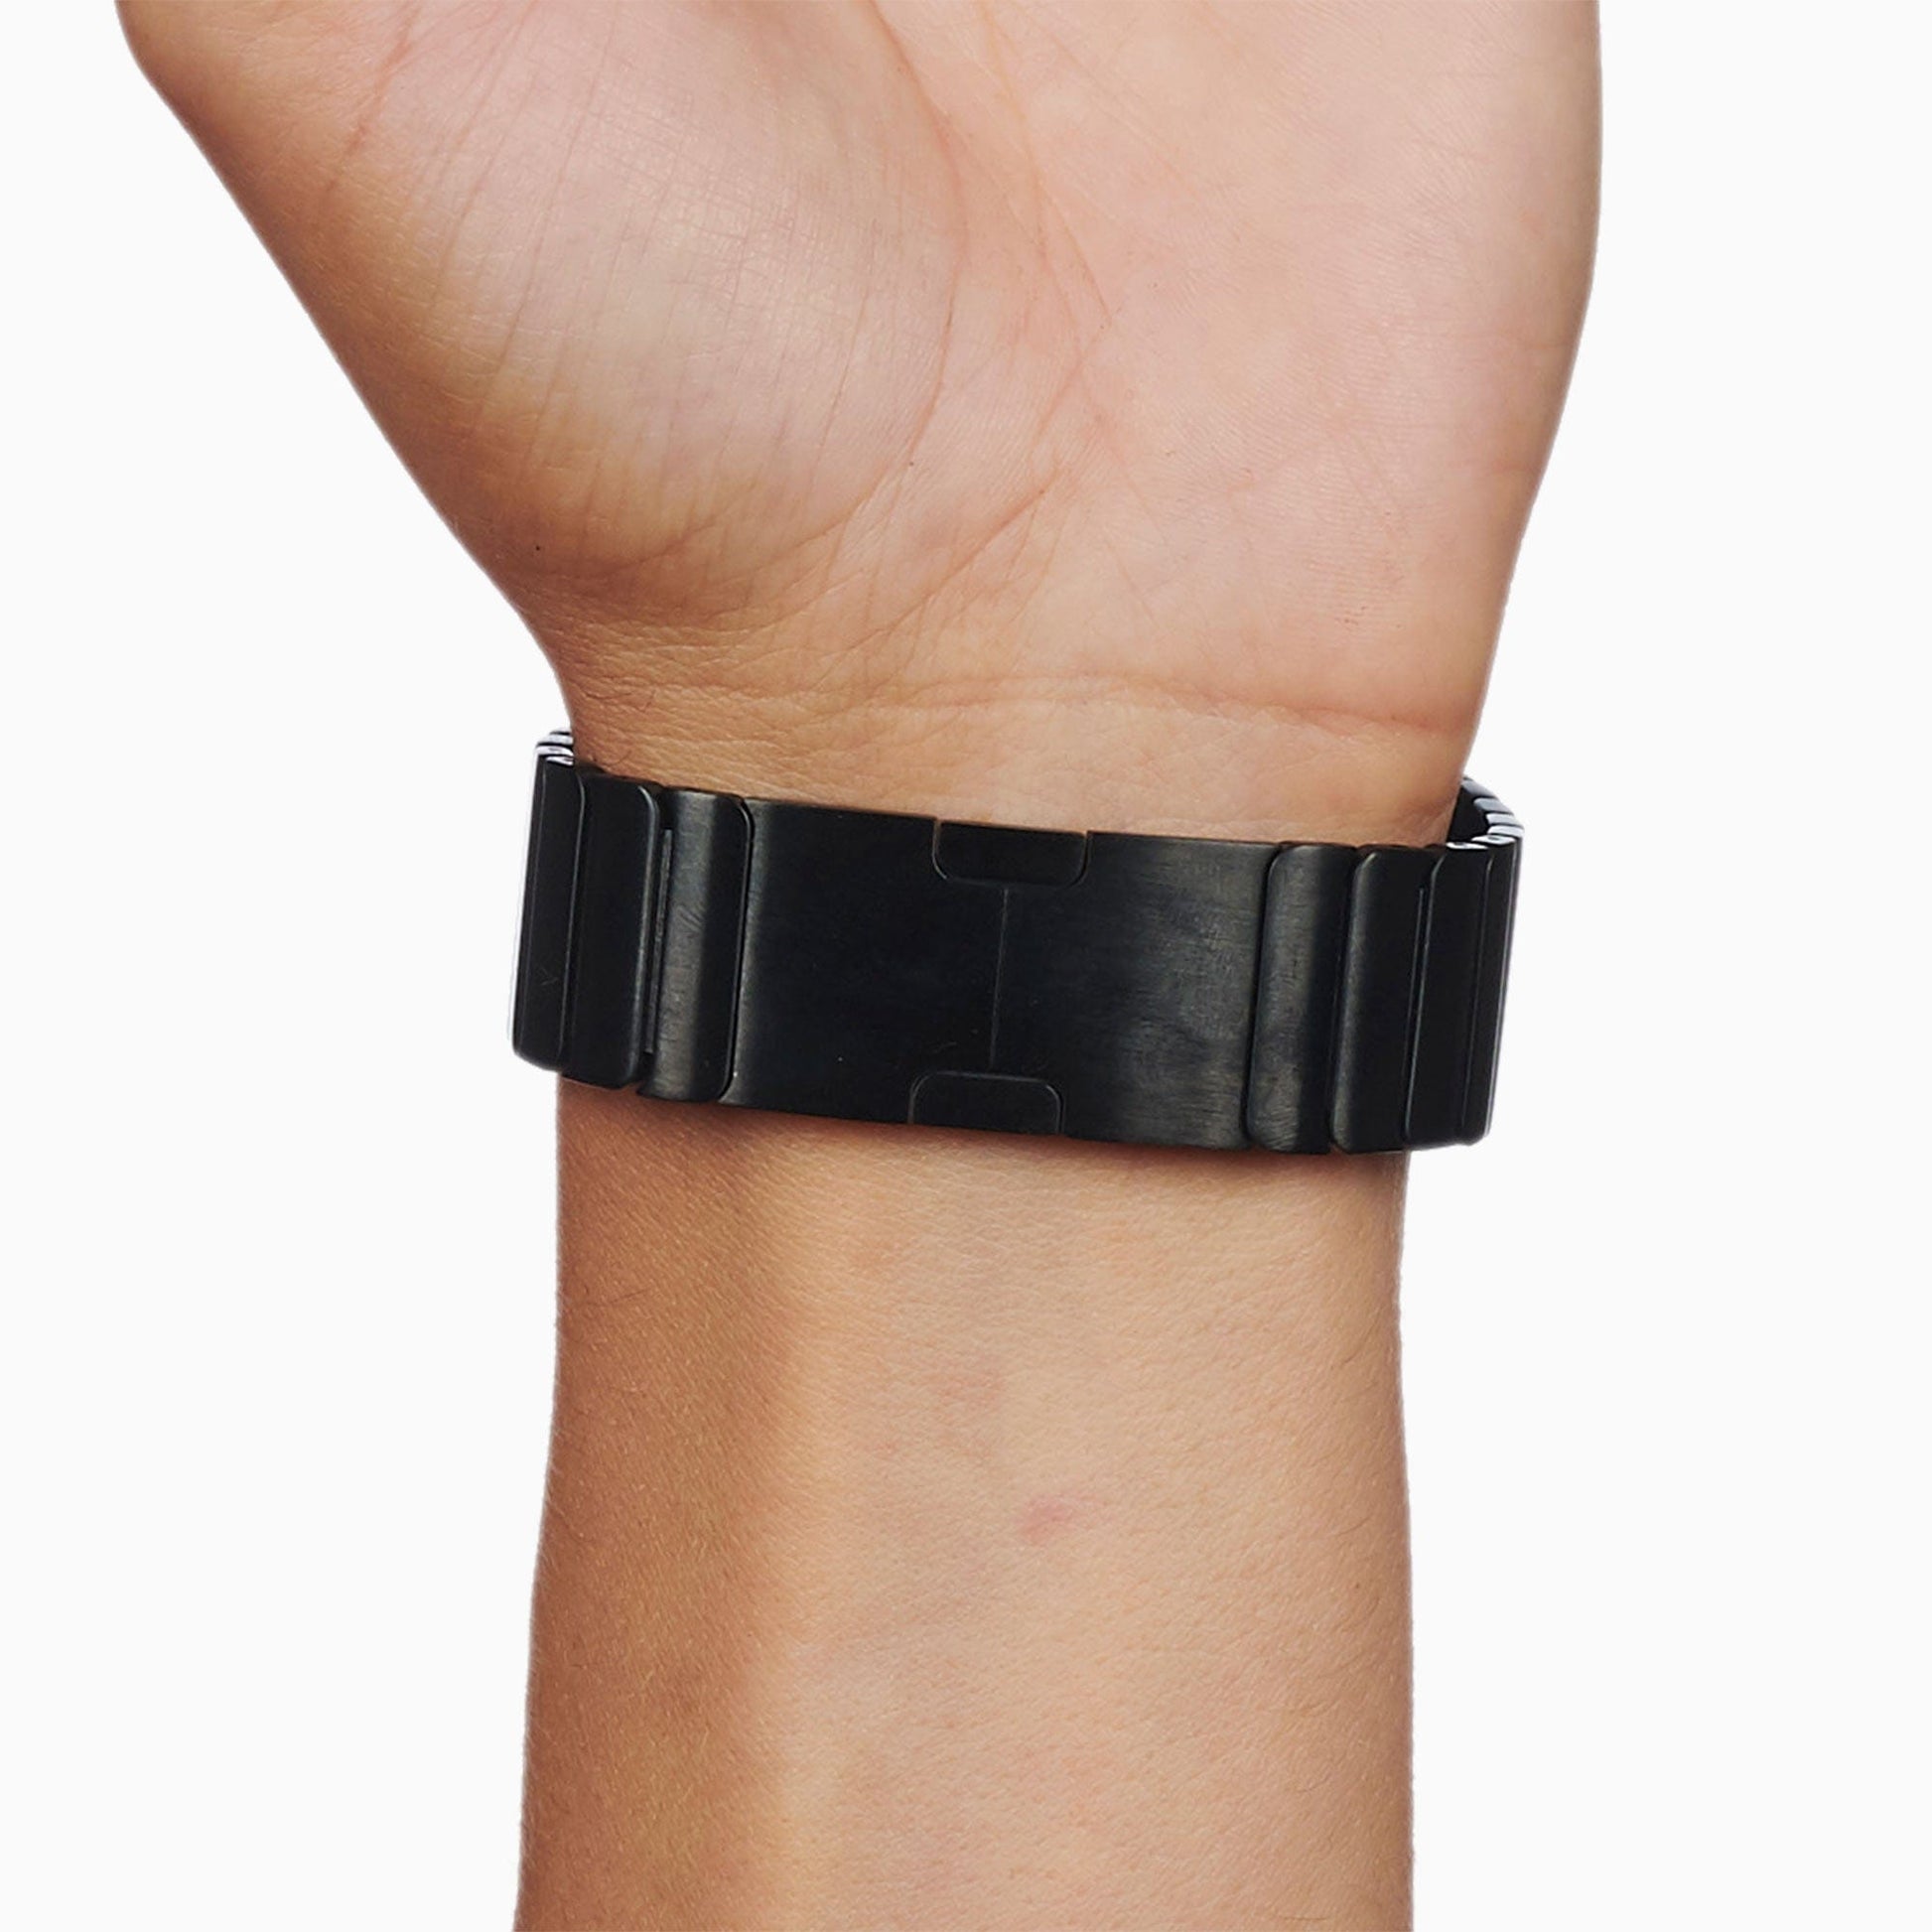 Apple 42mm Space Black Link Bracelet